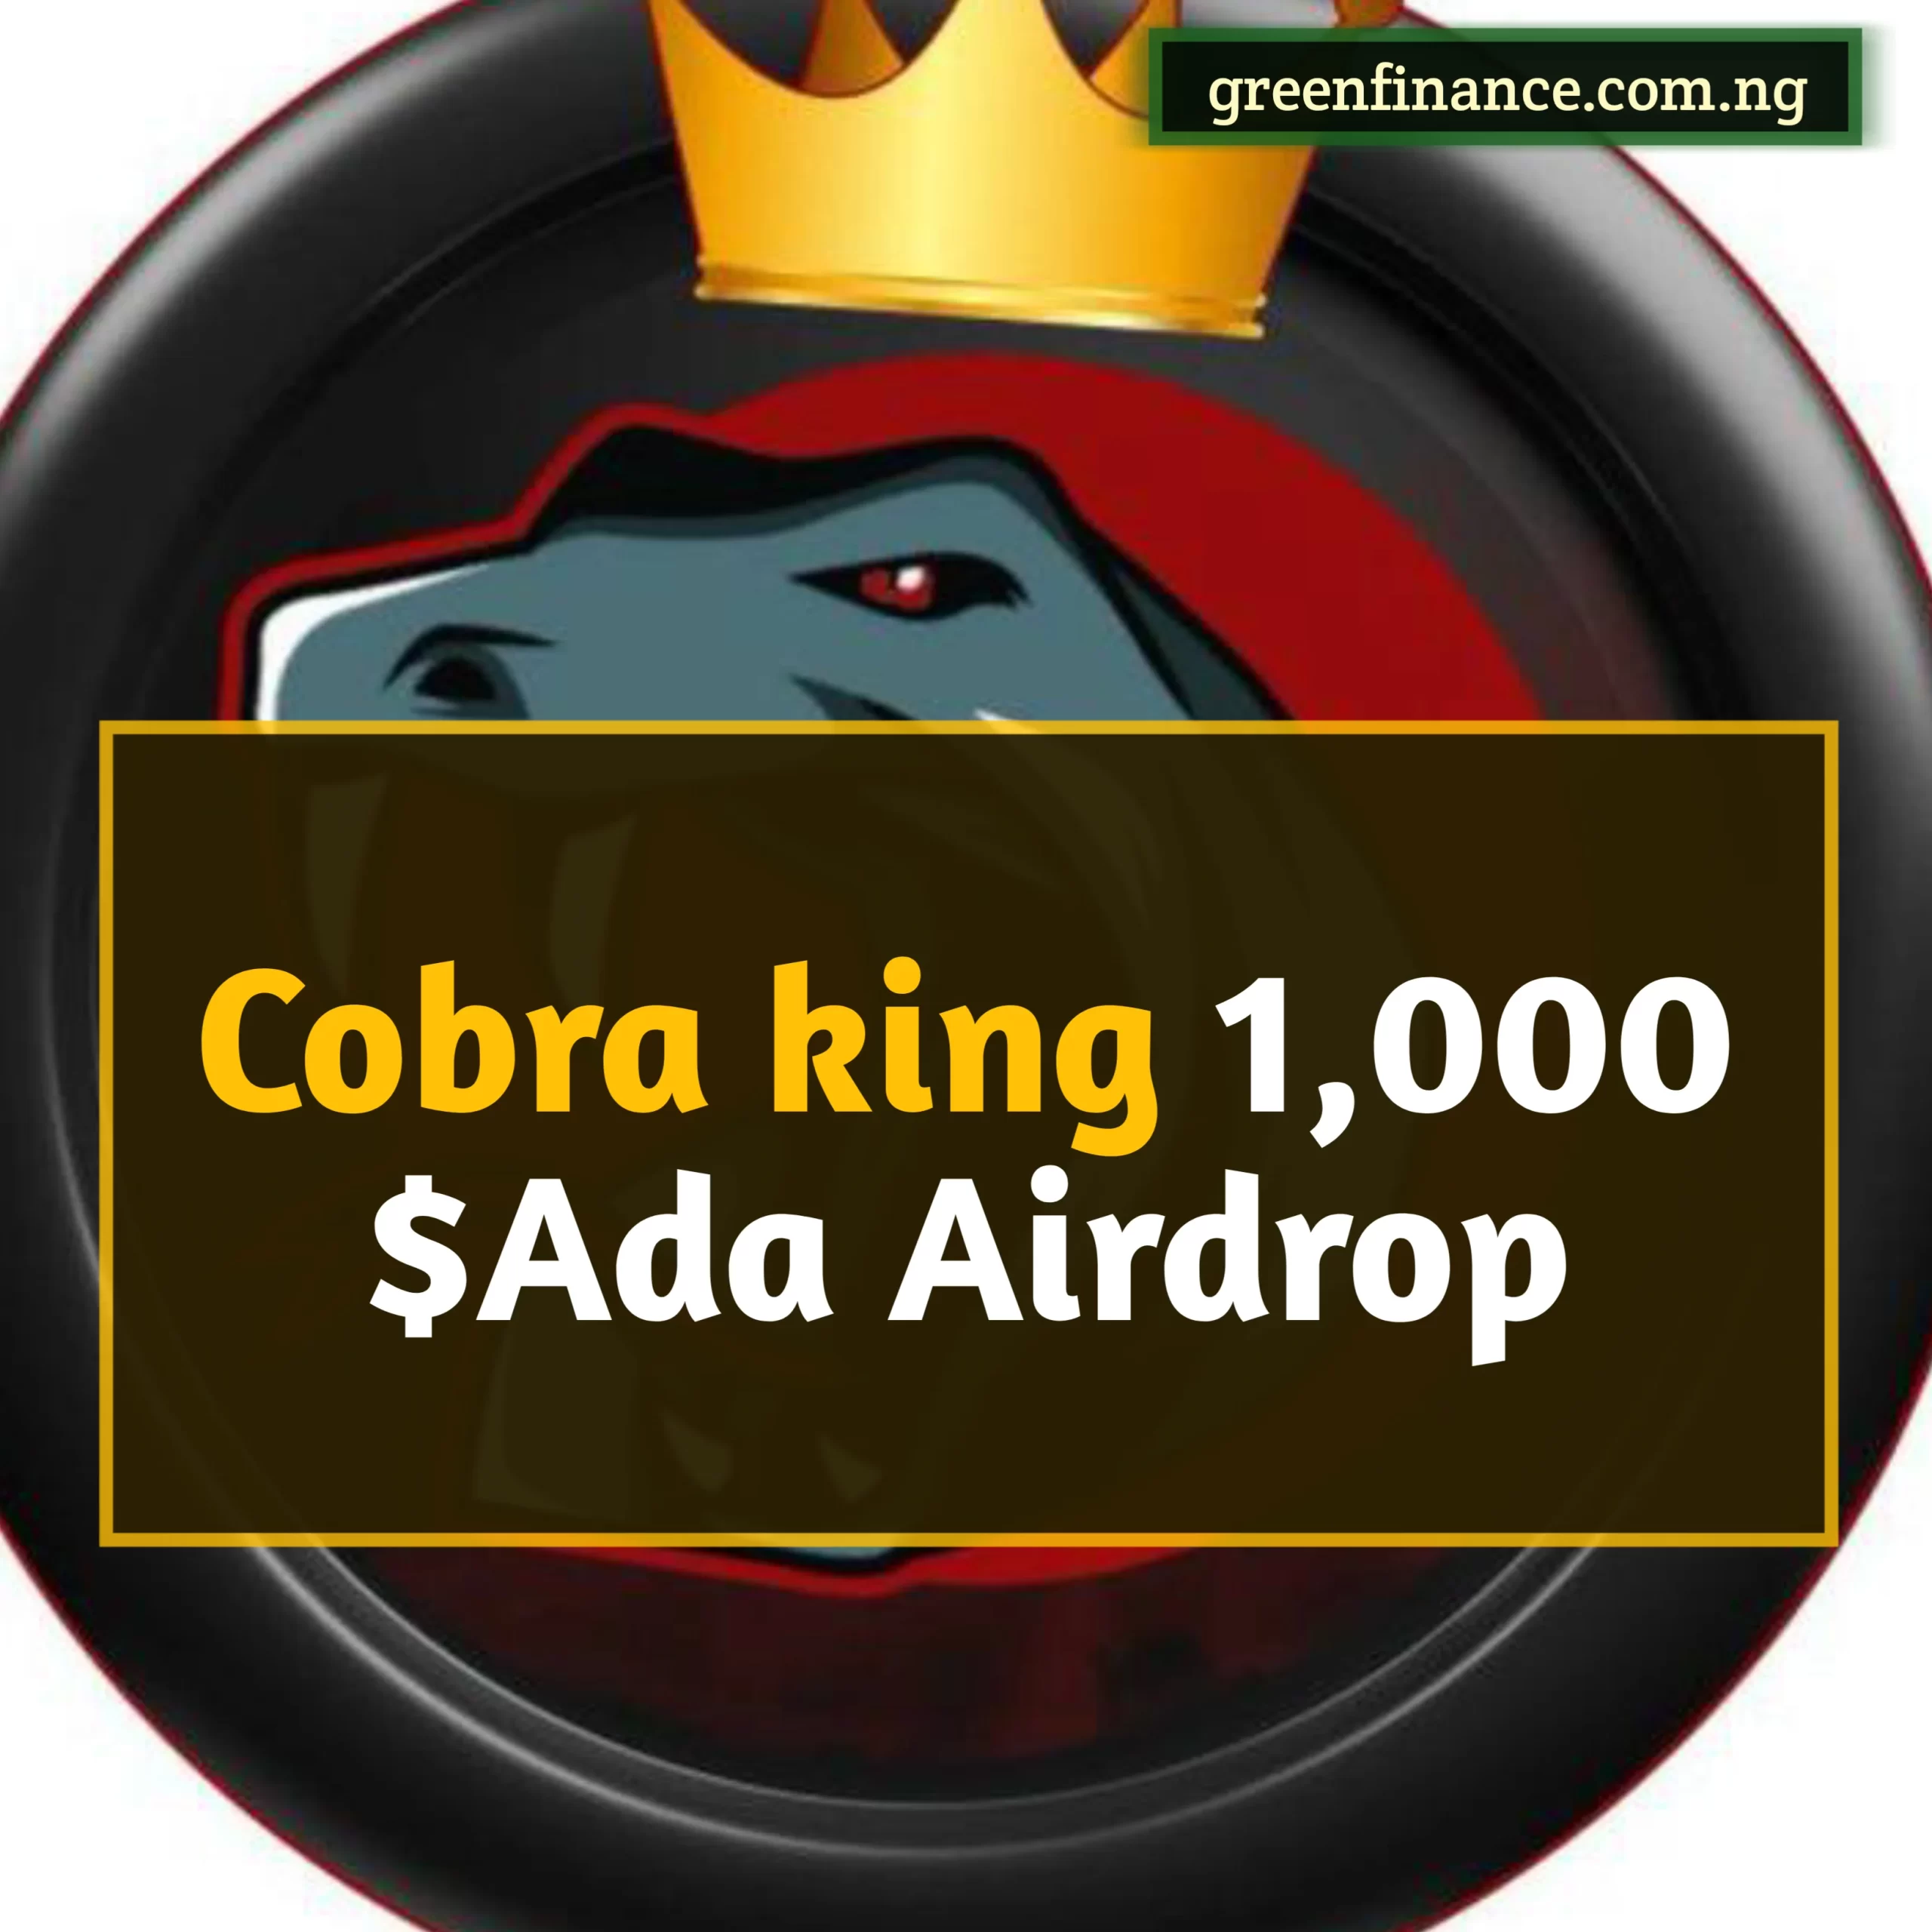 Cobra king airdrop free, Cobra king airdrop telegram